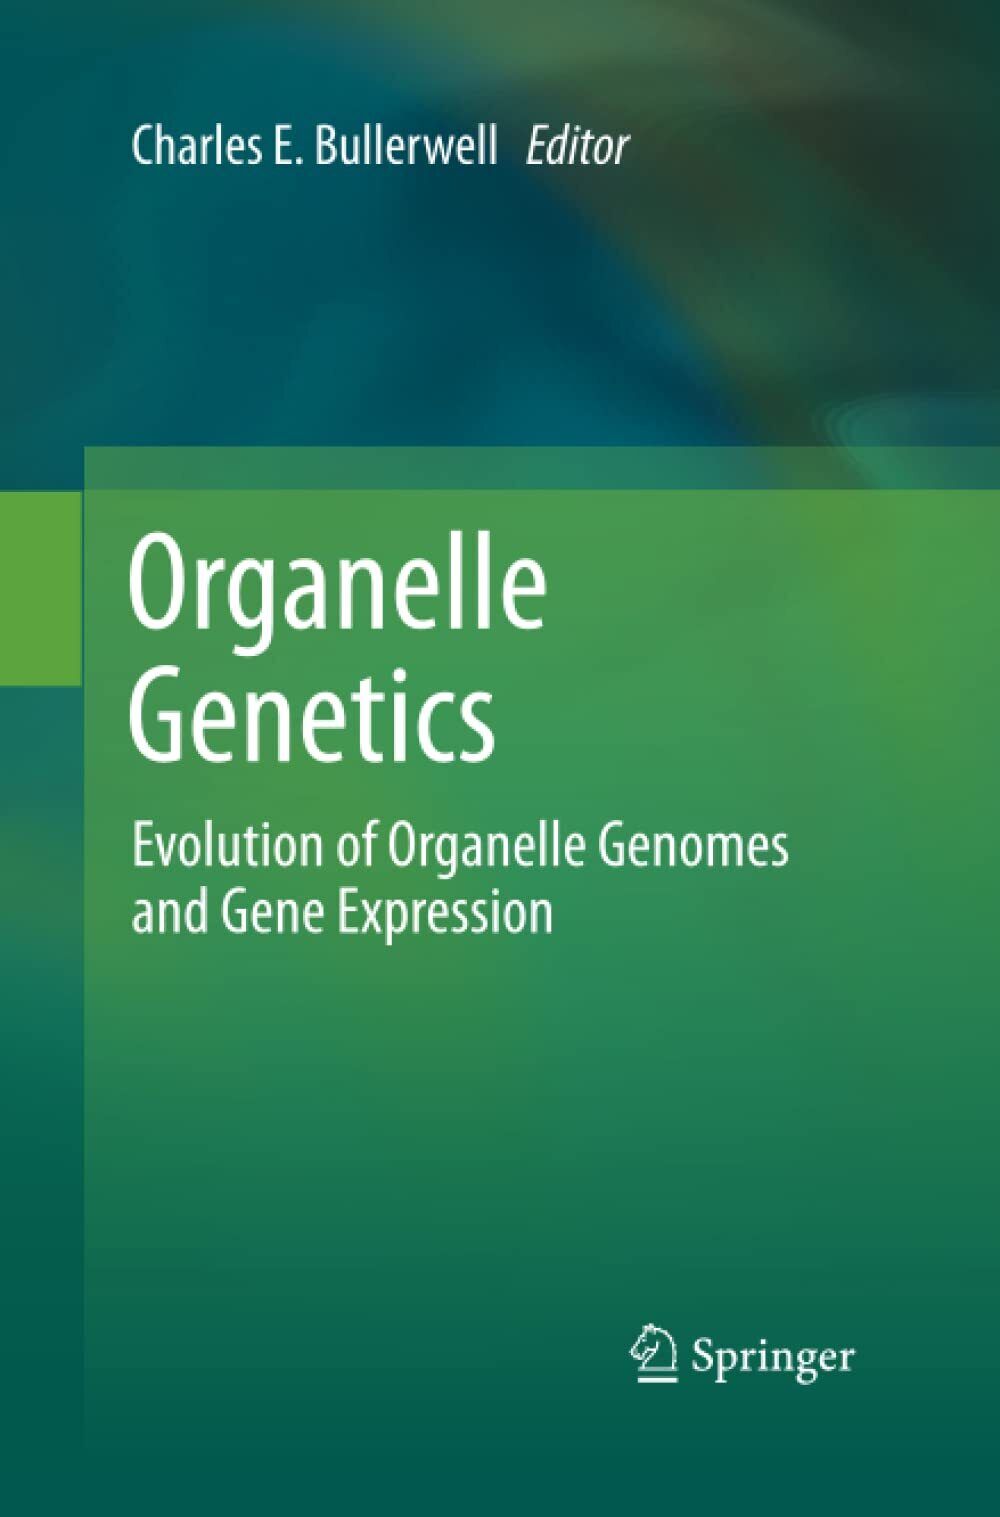 Organelle Genetics - Charles E. Bullerwell - Springer, 2014